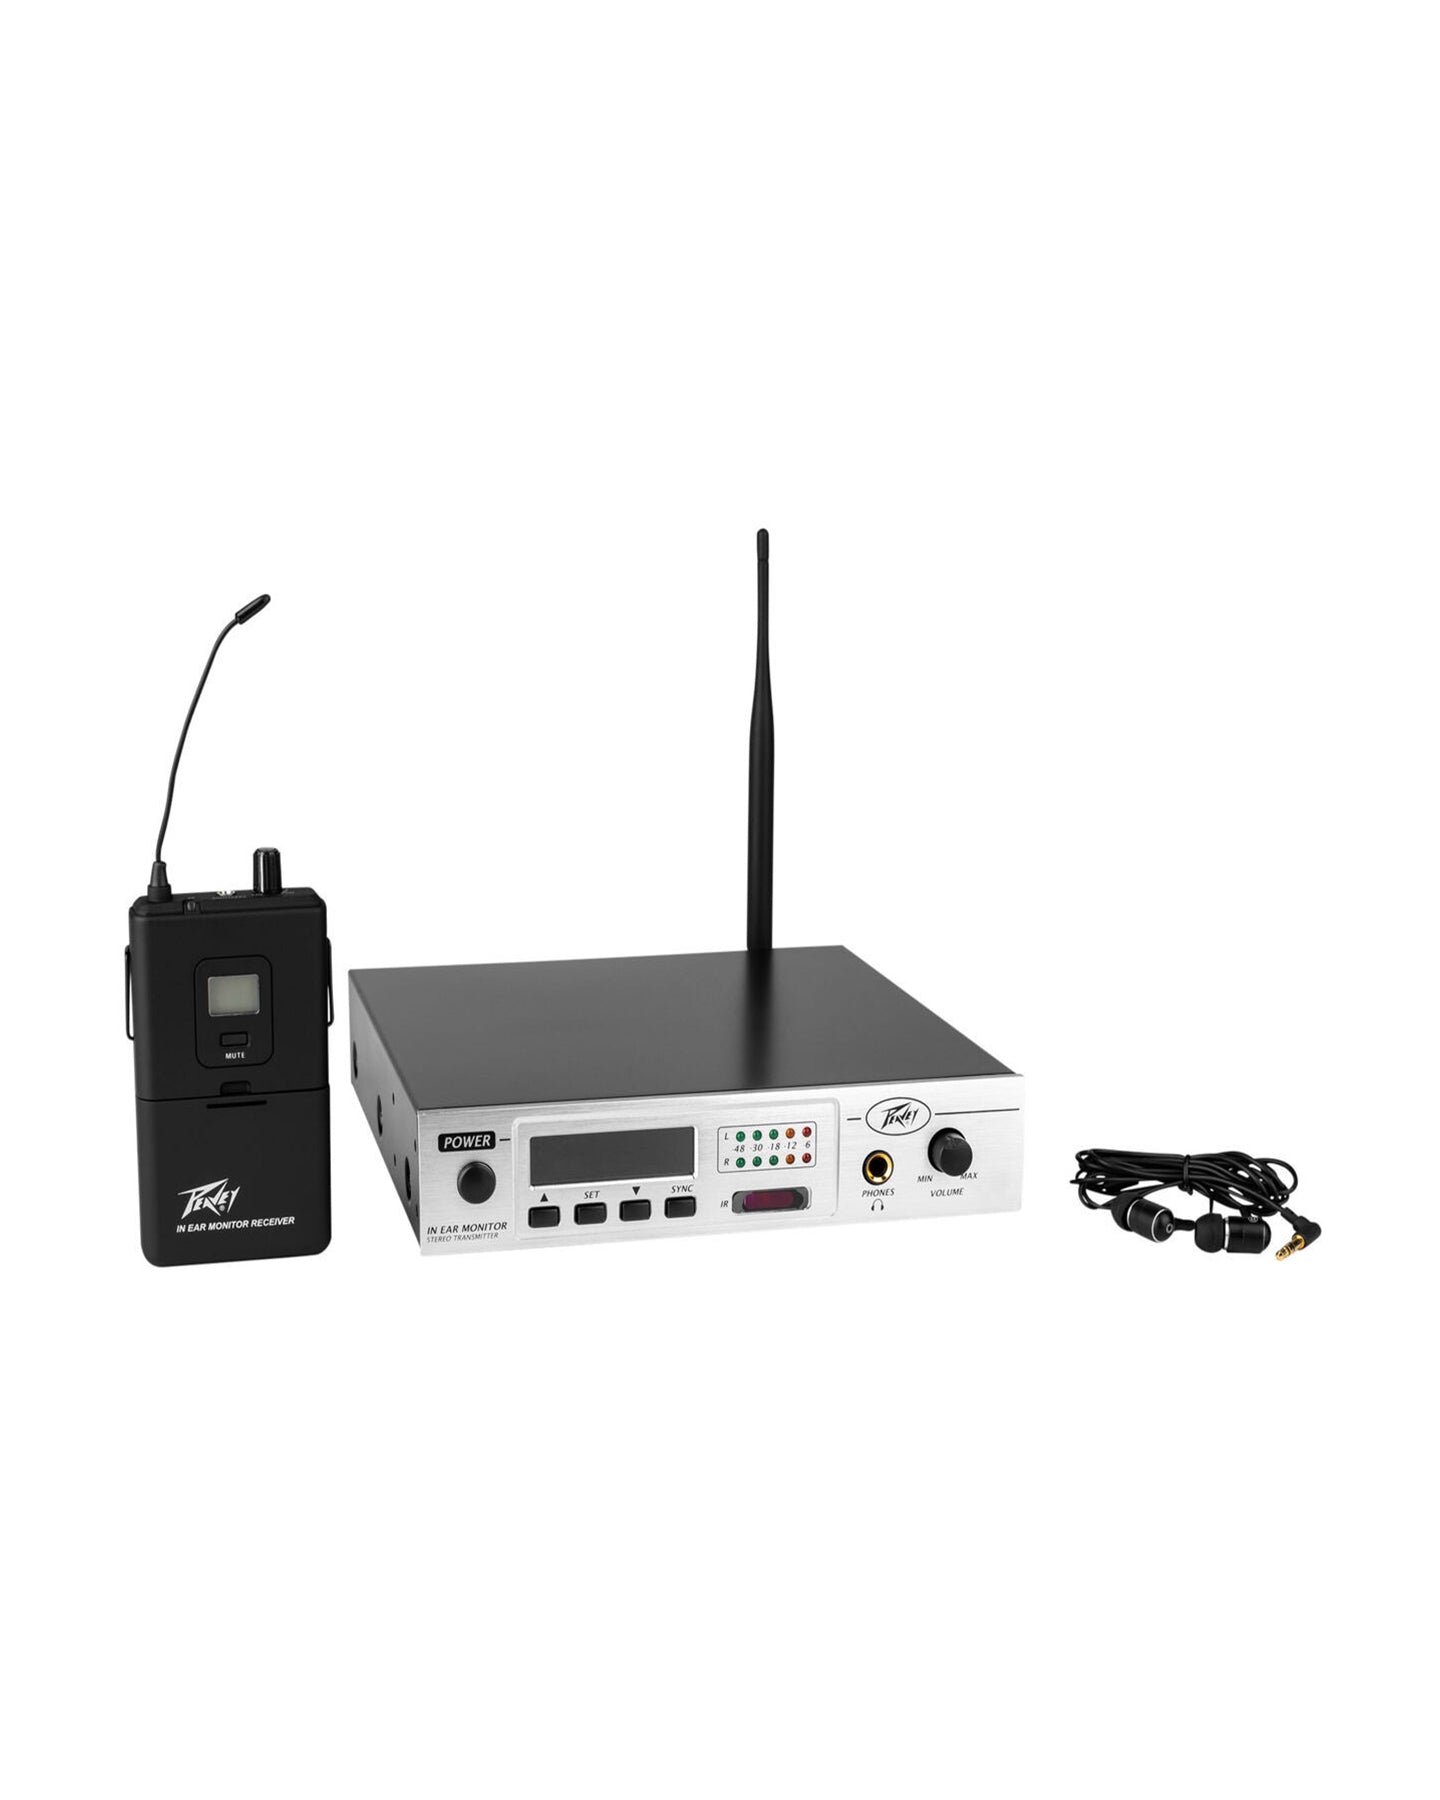 PVIEM In-Ear Monitor Wireless System, 100-Channel